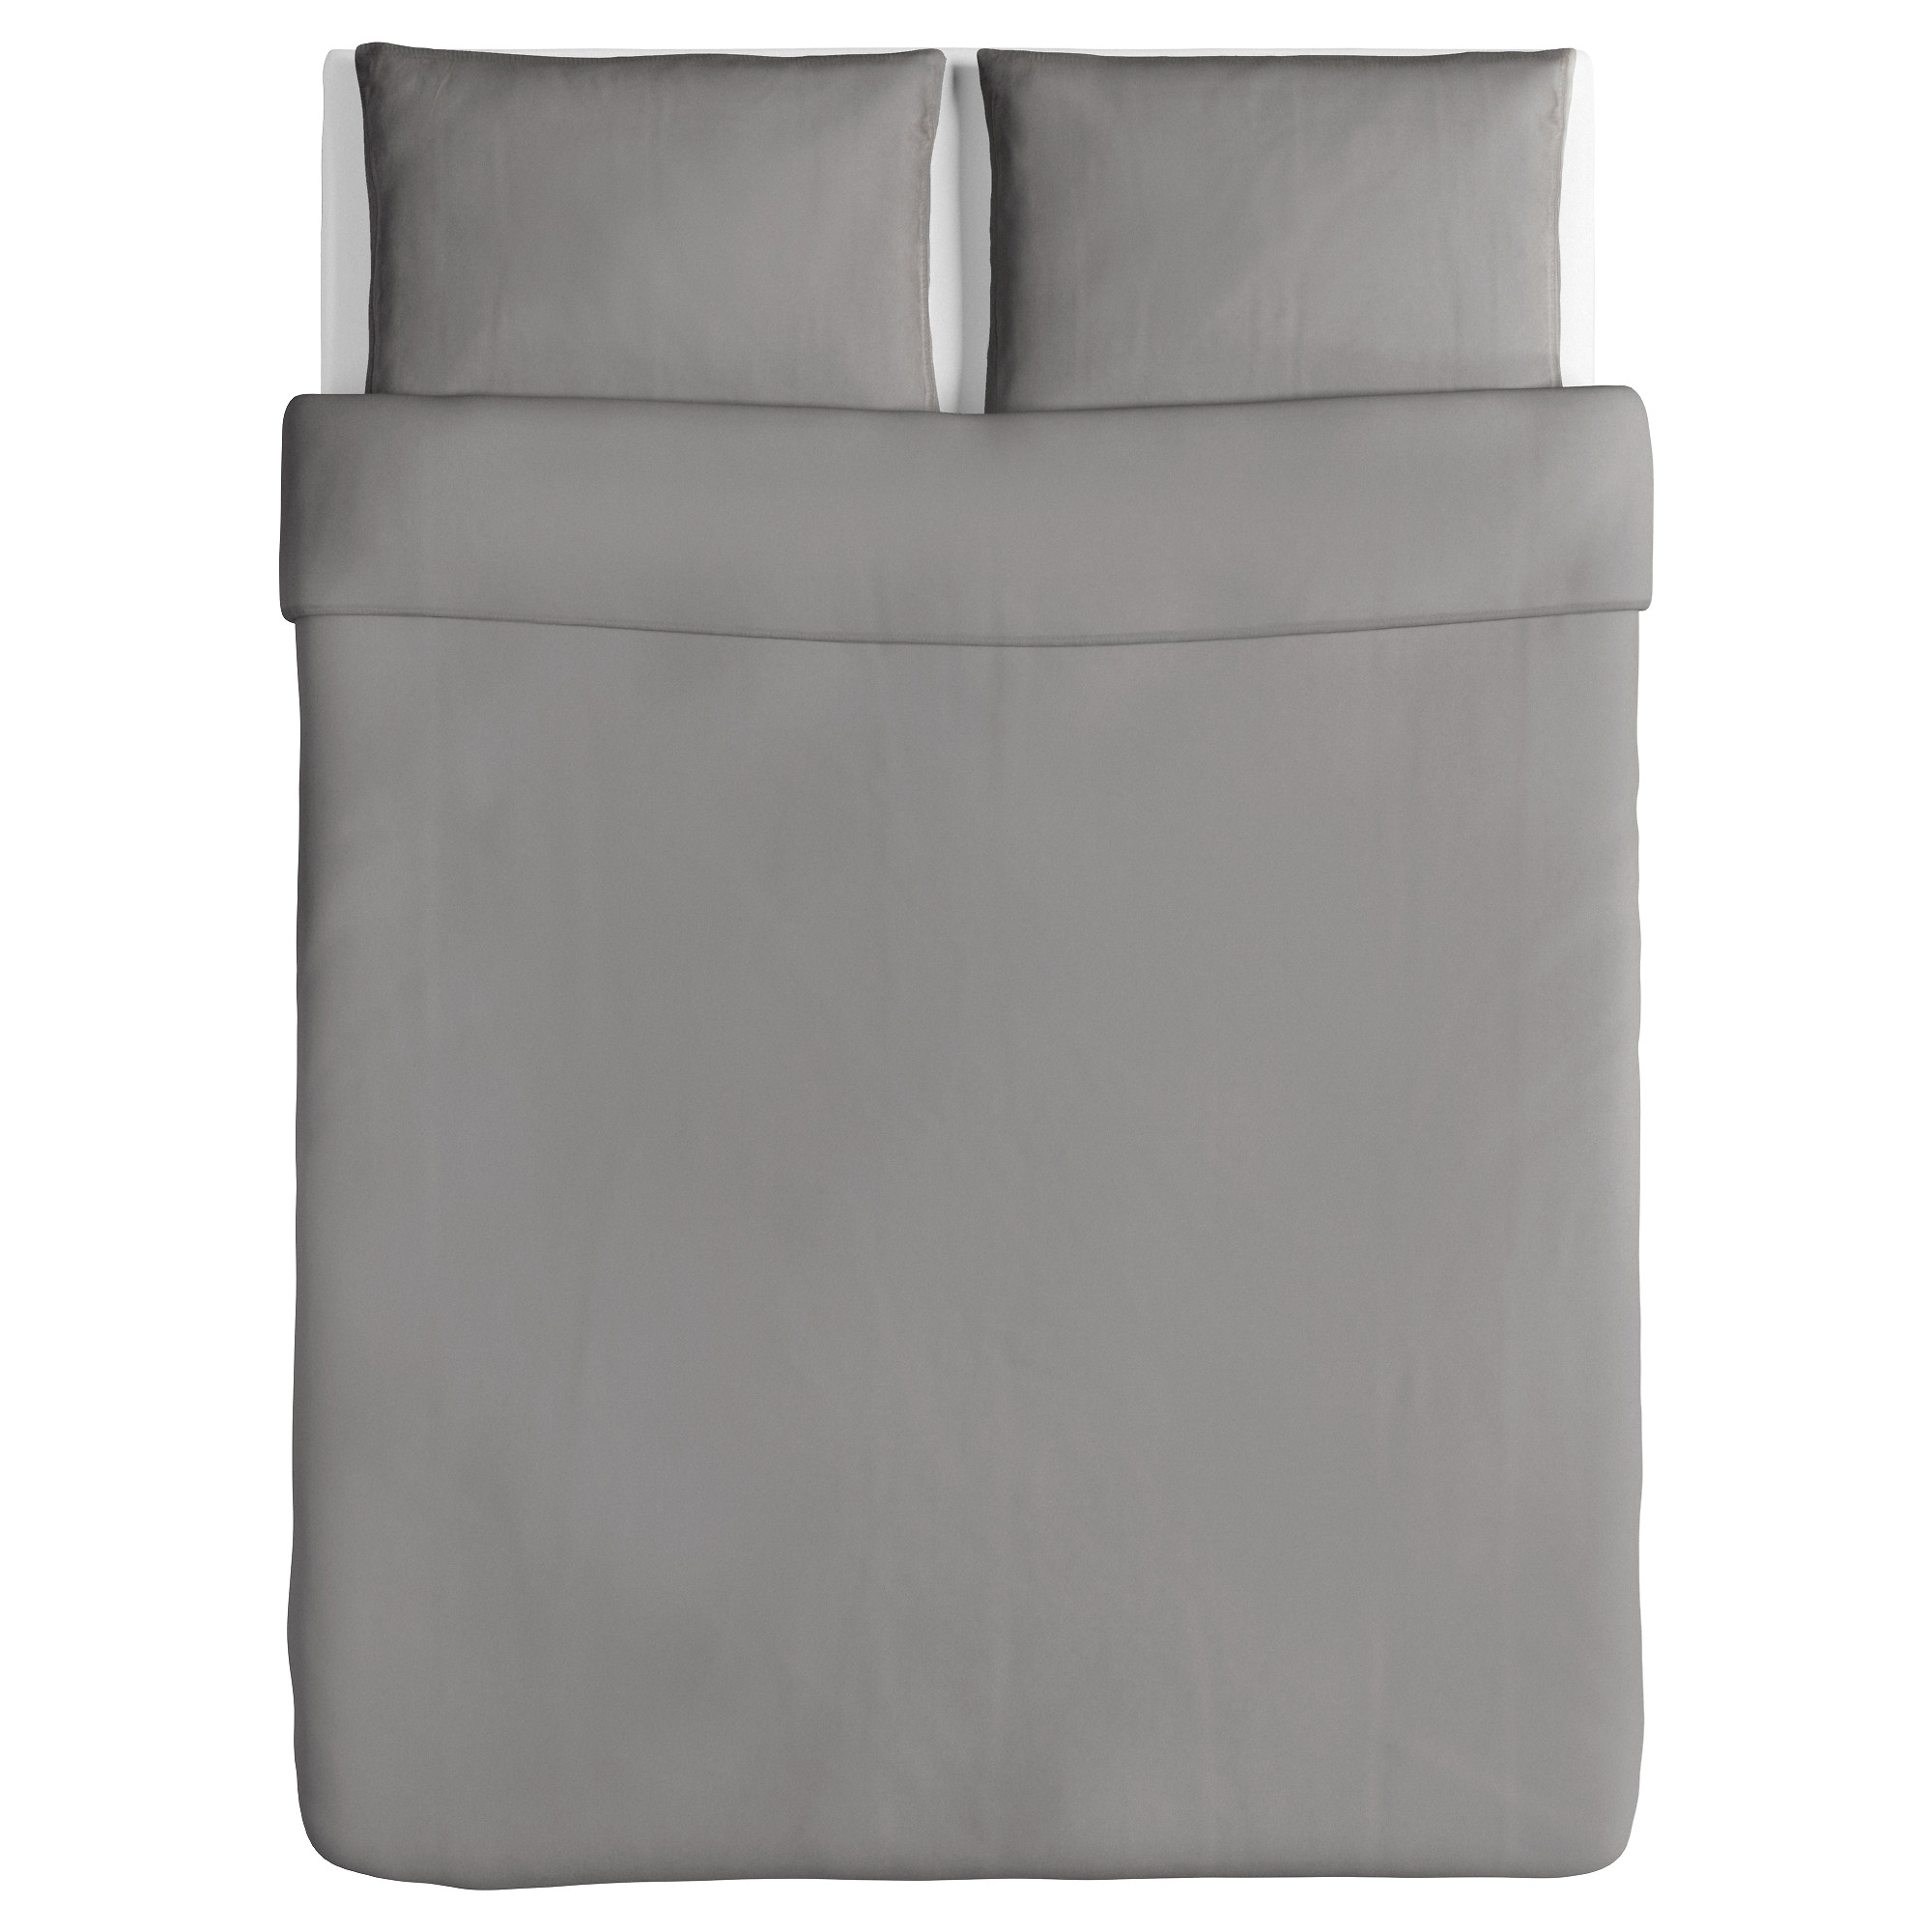 ÄNGSLILJA duvet cover and 2 pillowcases